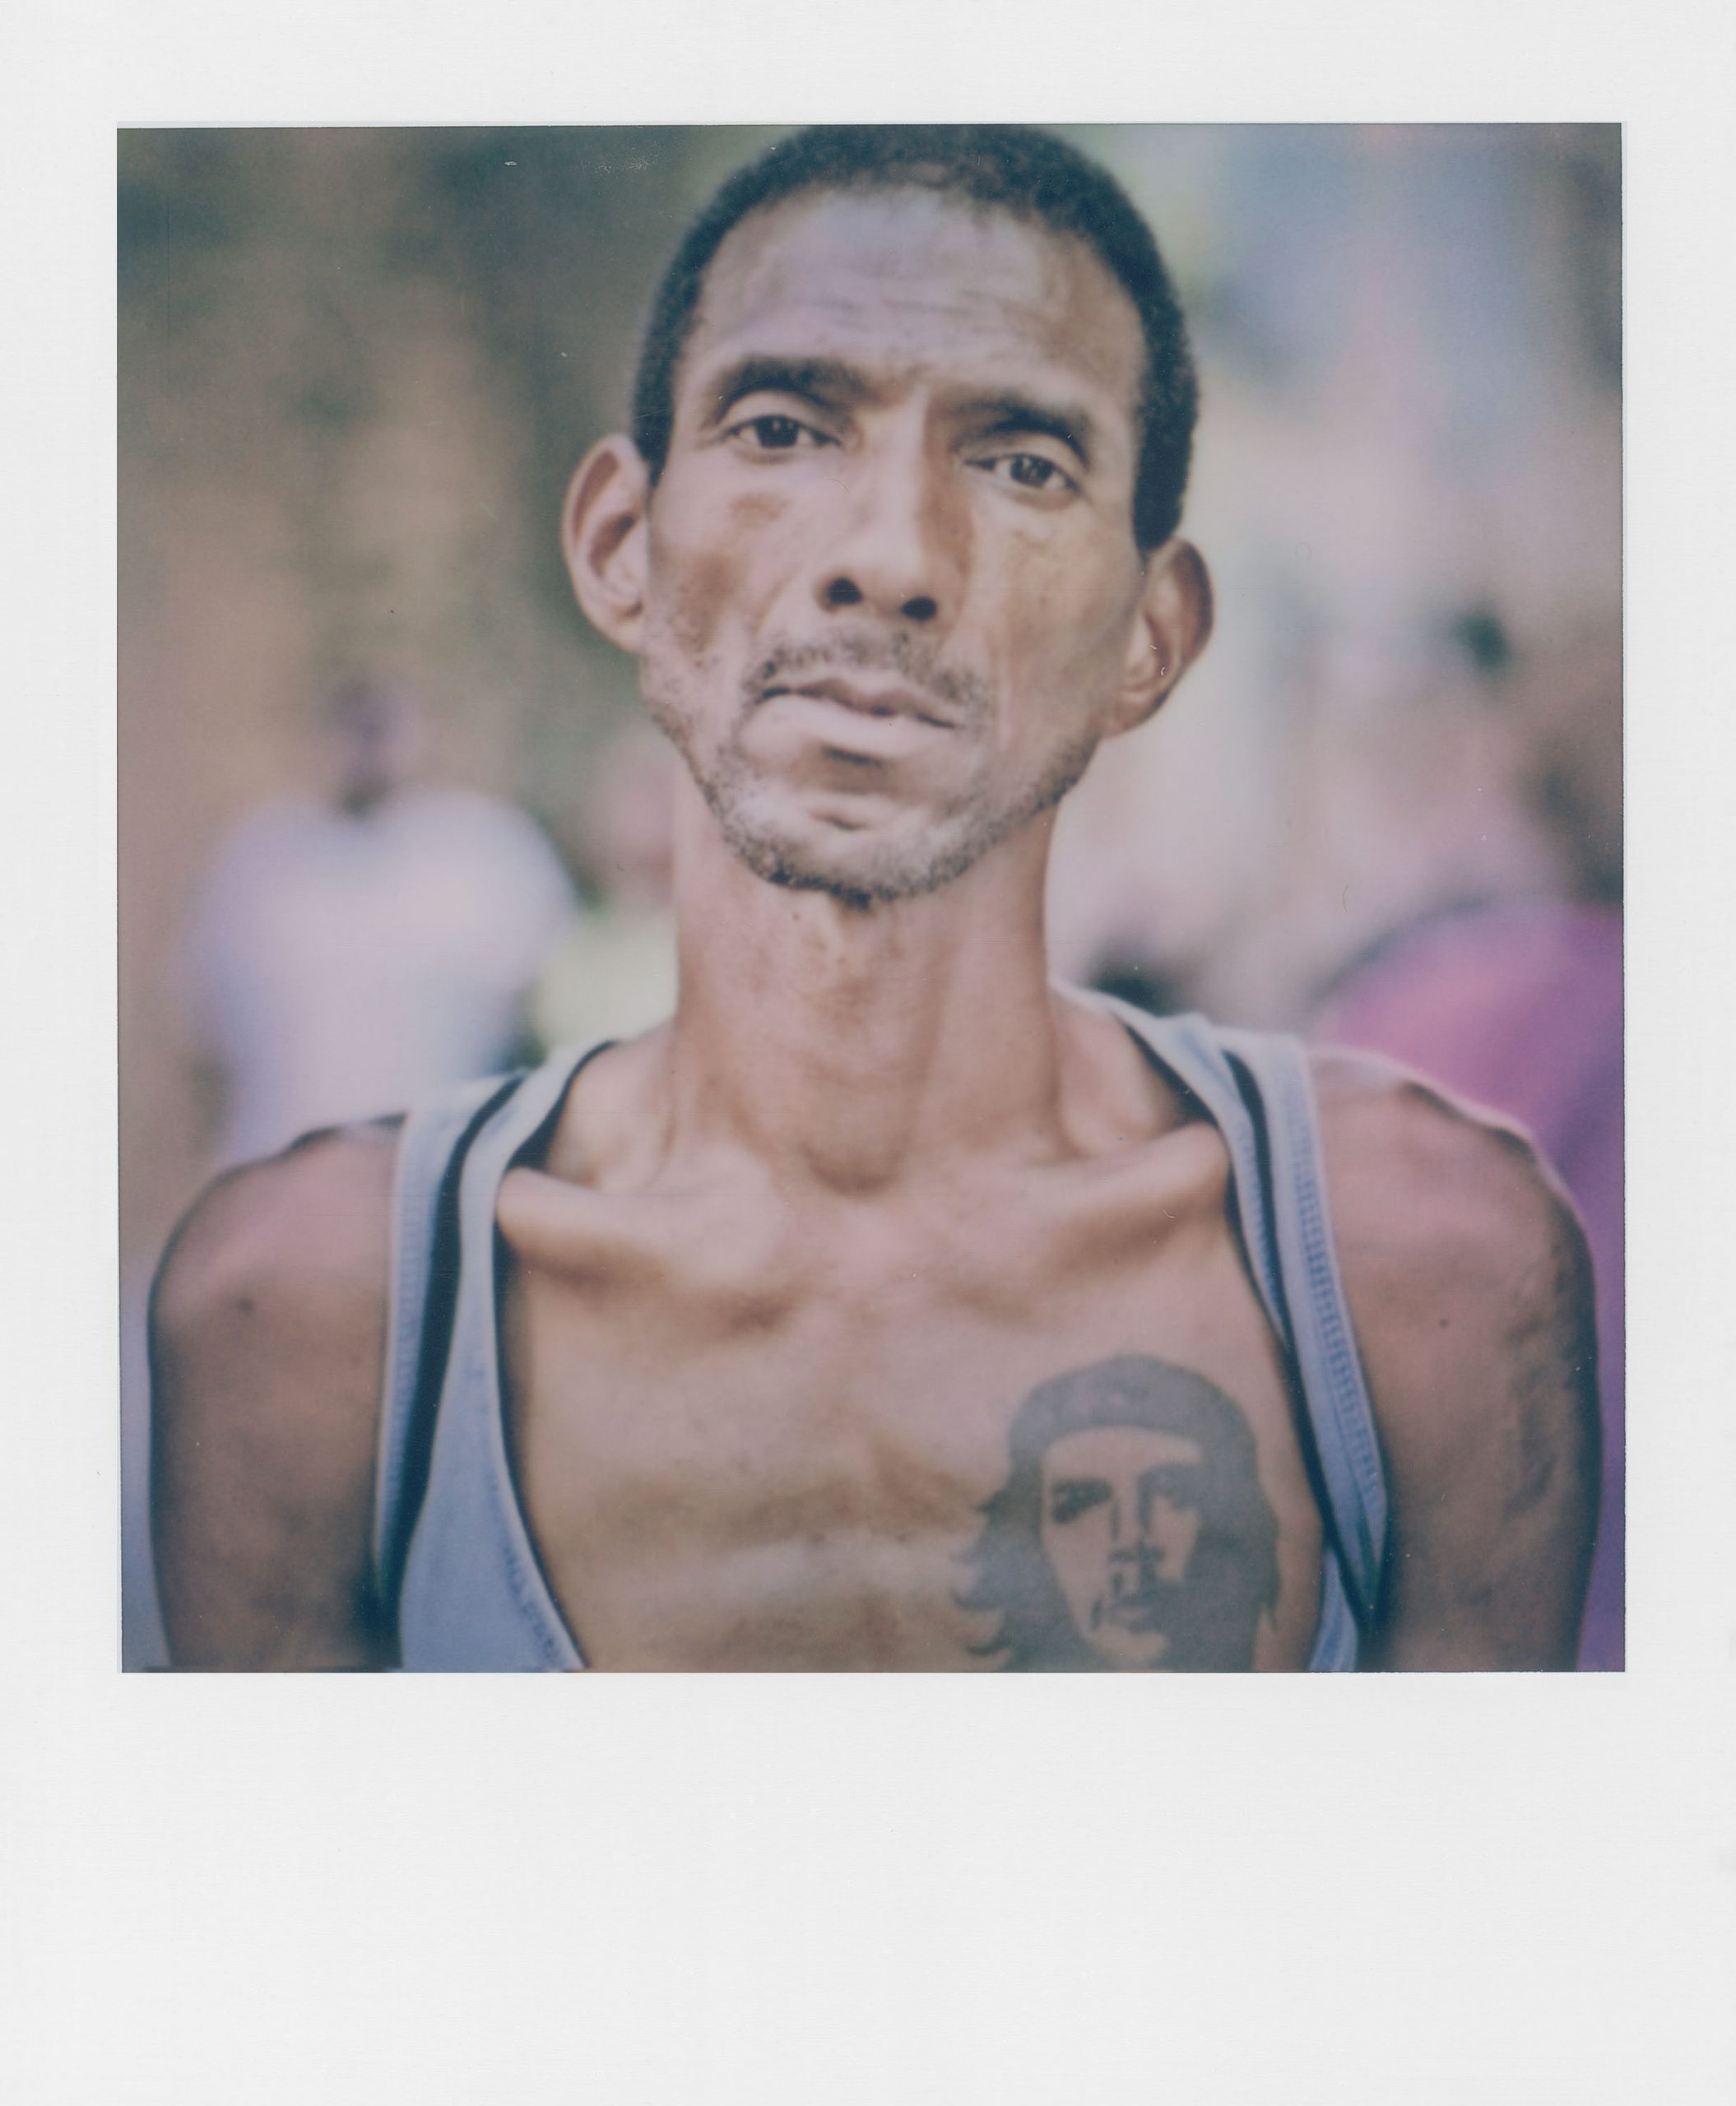 07 © Matteo Procaccioli Della Valle, PRIVATE, Serie Humans, Havana 2013